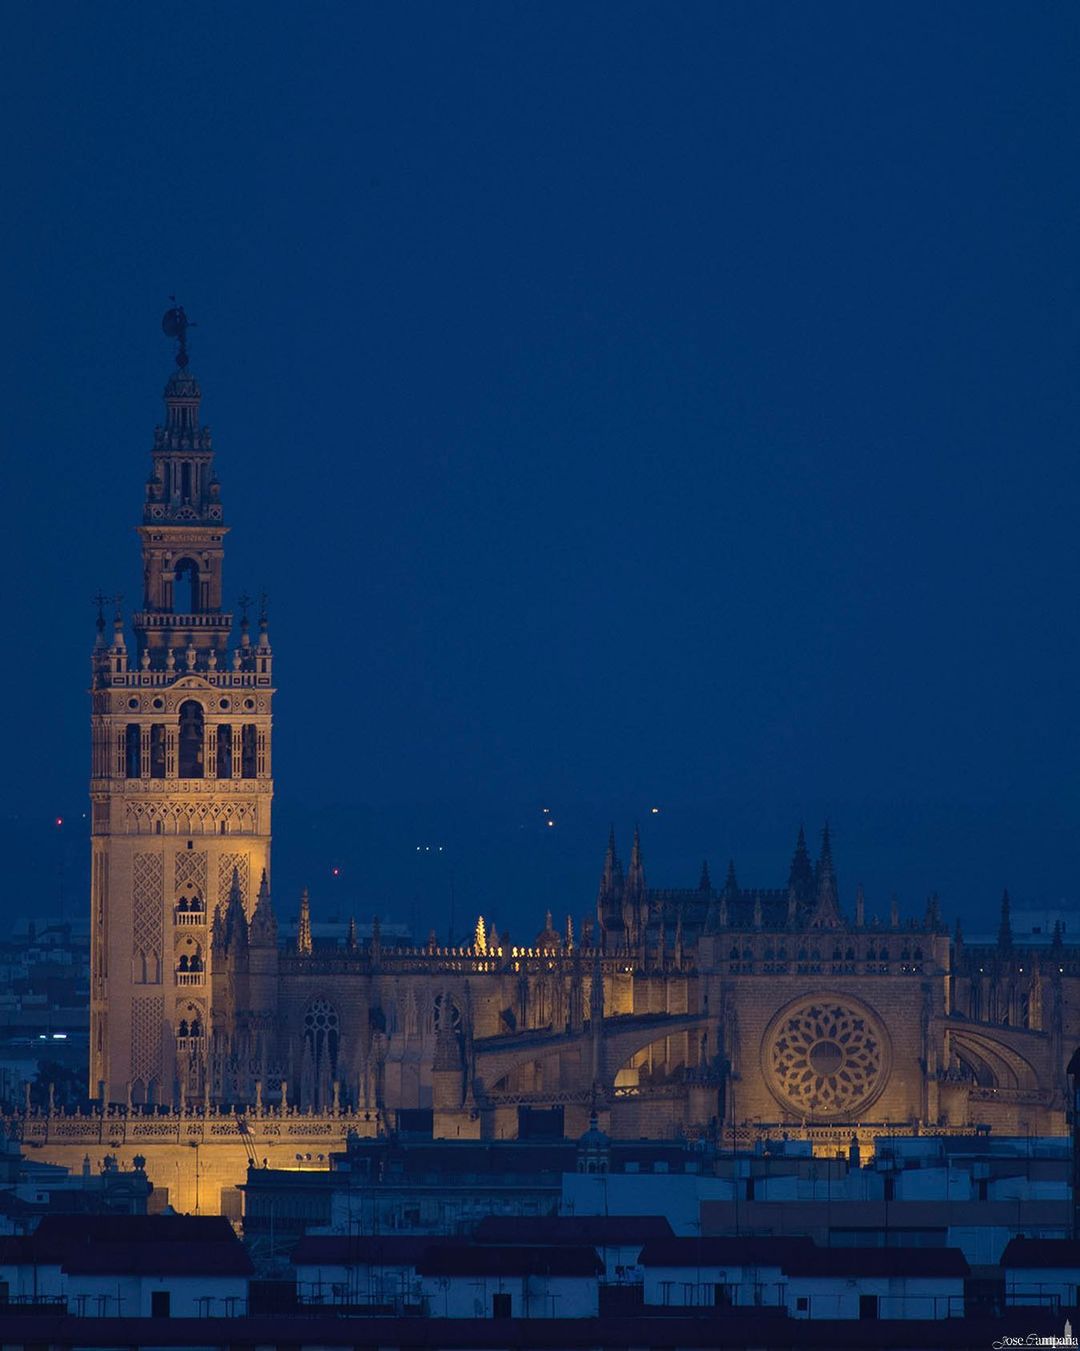 Abogados, gestores, servicios al ciudadano. Sevilla es una ciudad segura, con futuro y calidad de vida.